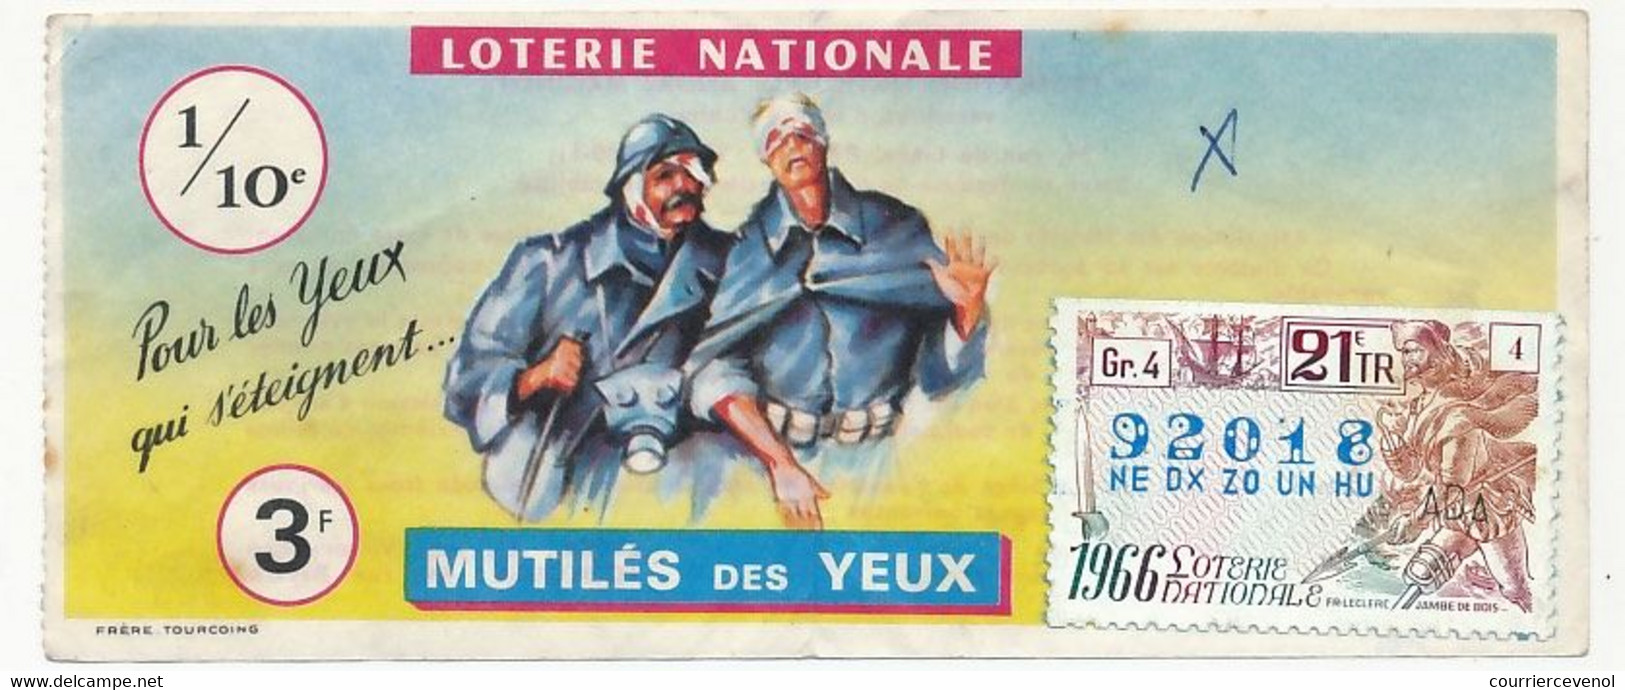 FRANCE - Loterie Nationale - 1/10ème - Mutilés Des Yeux - 21eme Tranche 1966 - Billets De Loterie